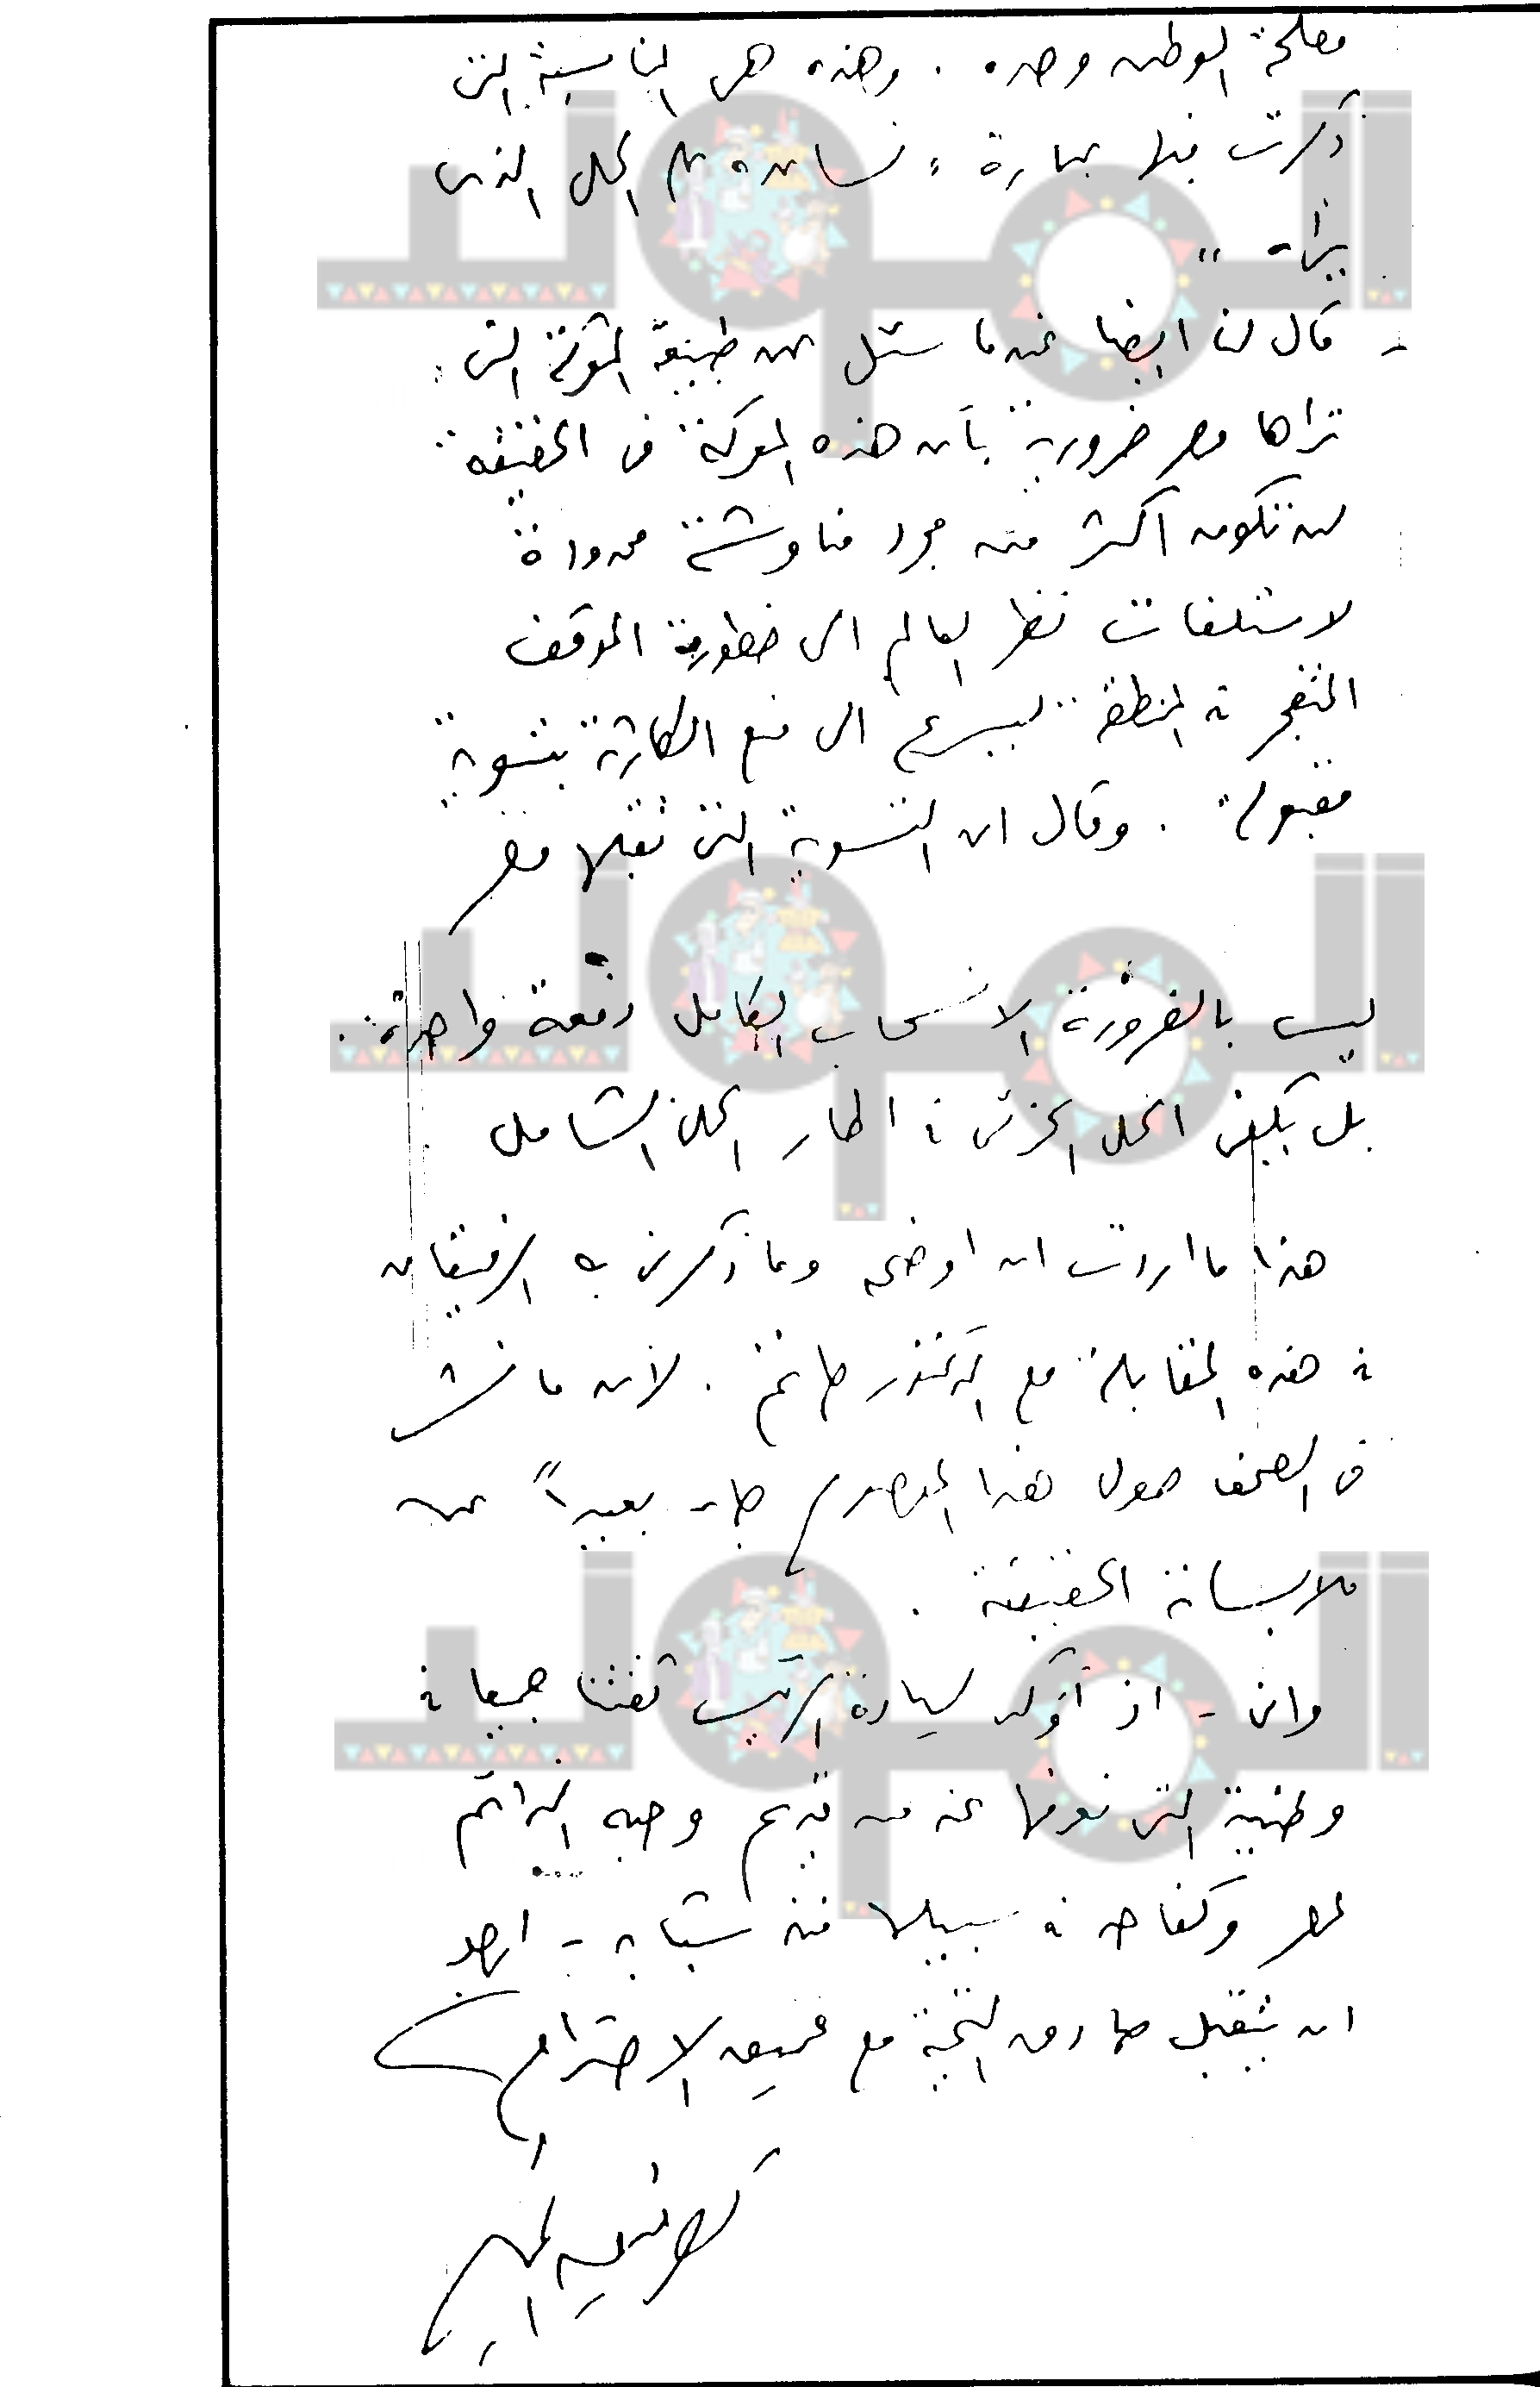 ص 2 من خطاب توفيق الحكيم لـ أنور السادات